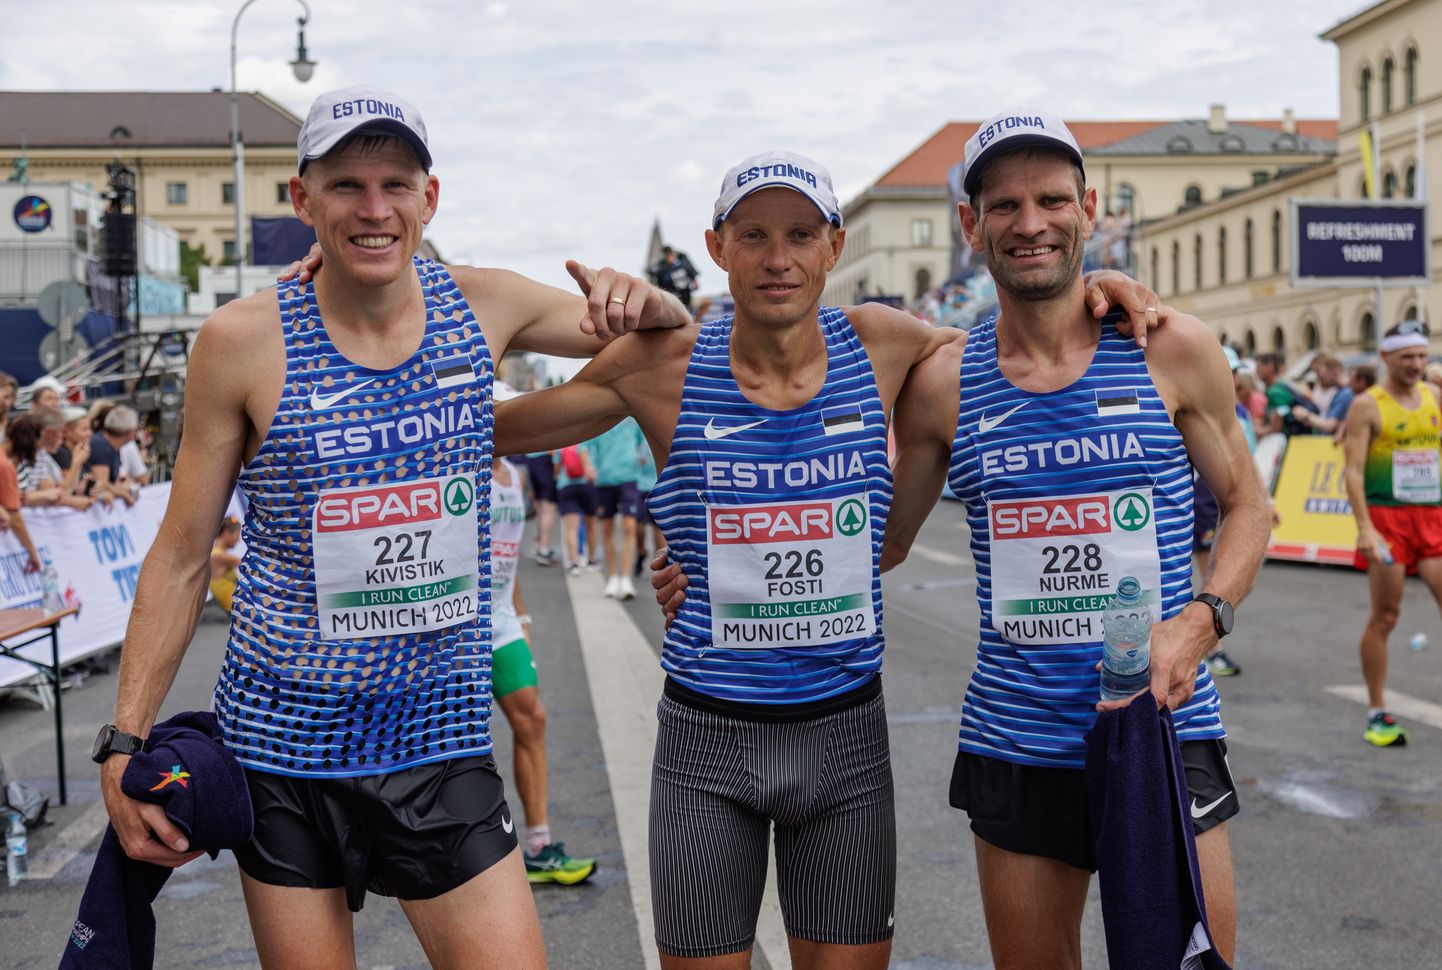 Eesti maratonimehed saavutasid võistkondlikult kuuenda koha. Paremalt: Tiidrek Nurme, Roman Fosti ja Kaur Kivistik.